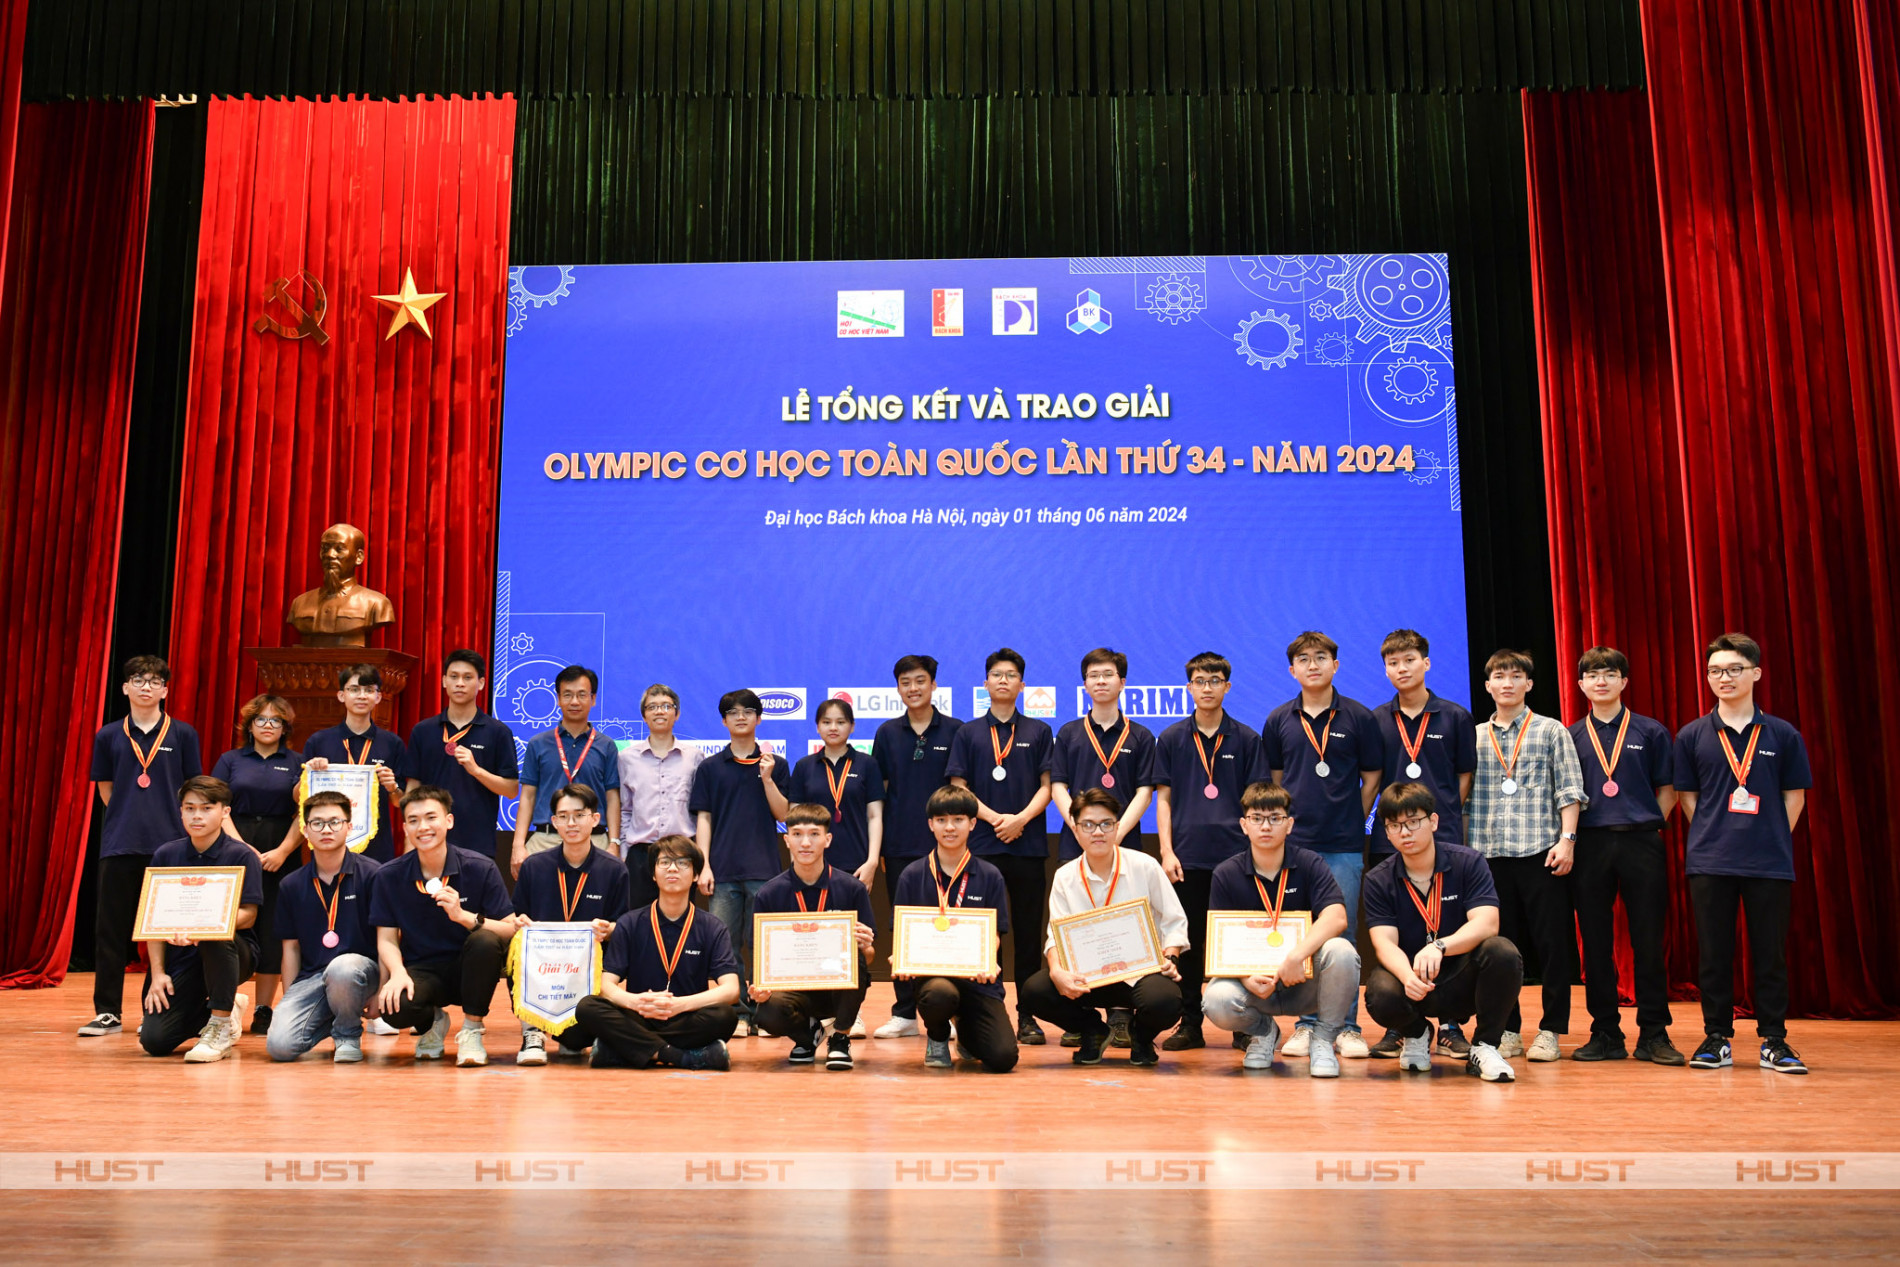 Bách khoa Hà Nội giành 53 giải cá nhân, đồng đội Olympic Cơ học toàn quốc lần thứ 34